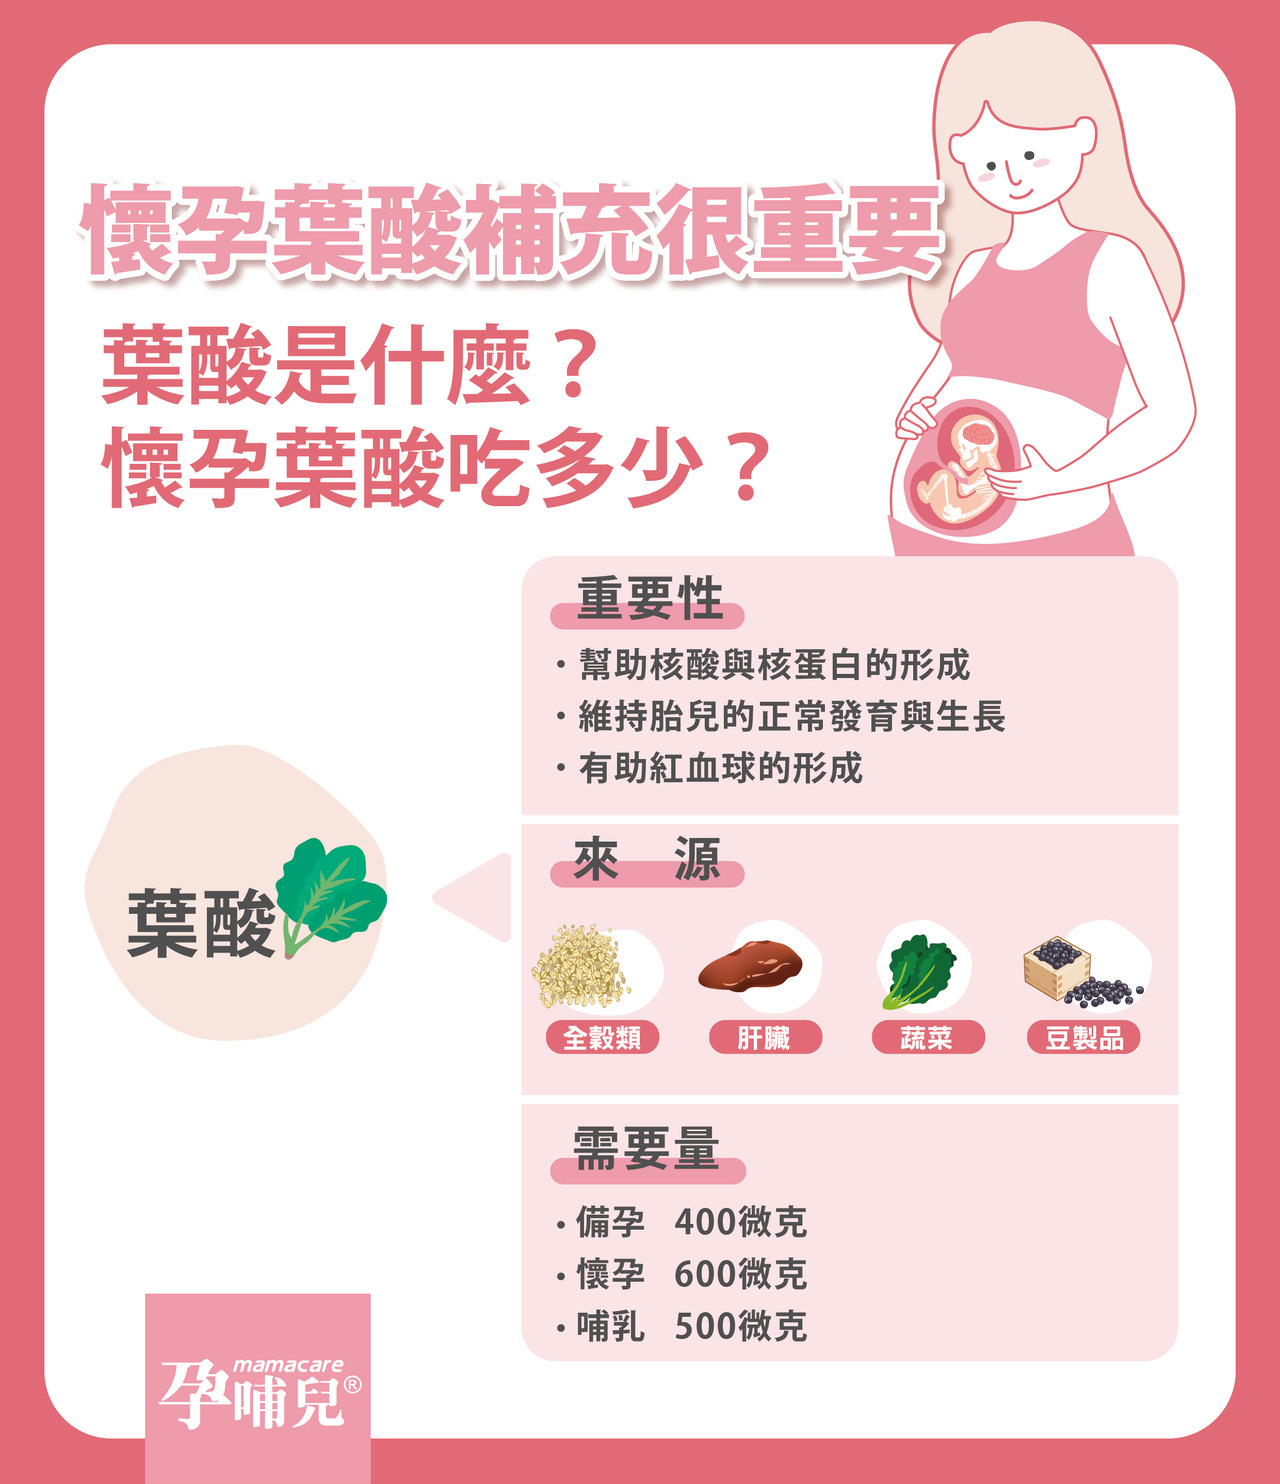 懷孕葉酸補充很重要   葉酸是什麼?懷孕葉酸吃多少?